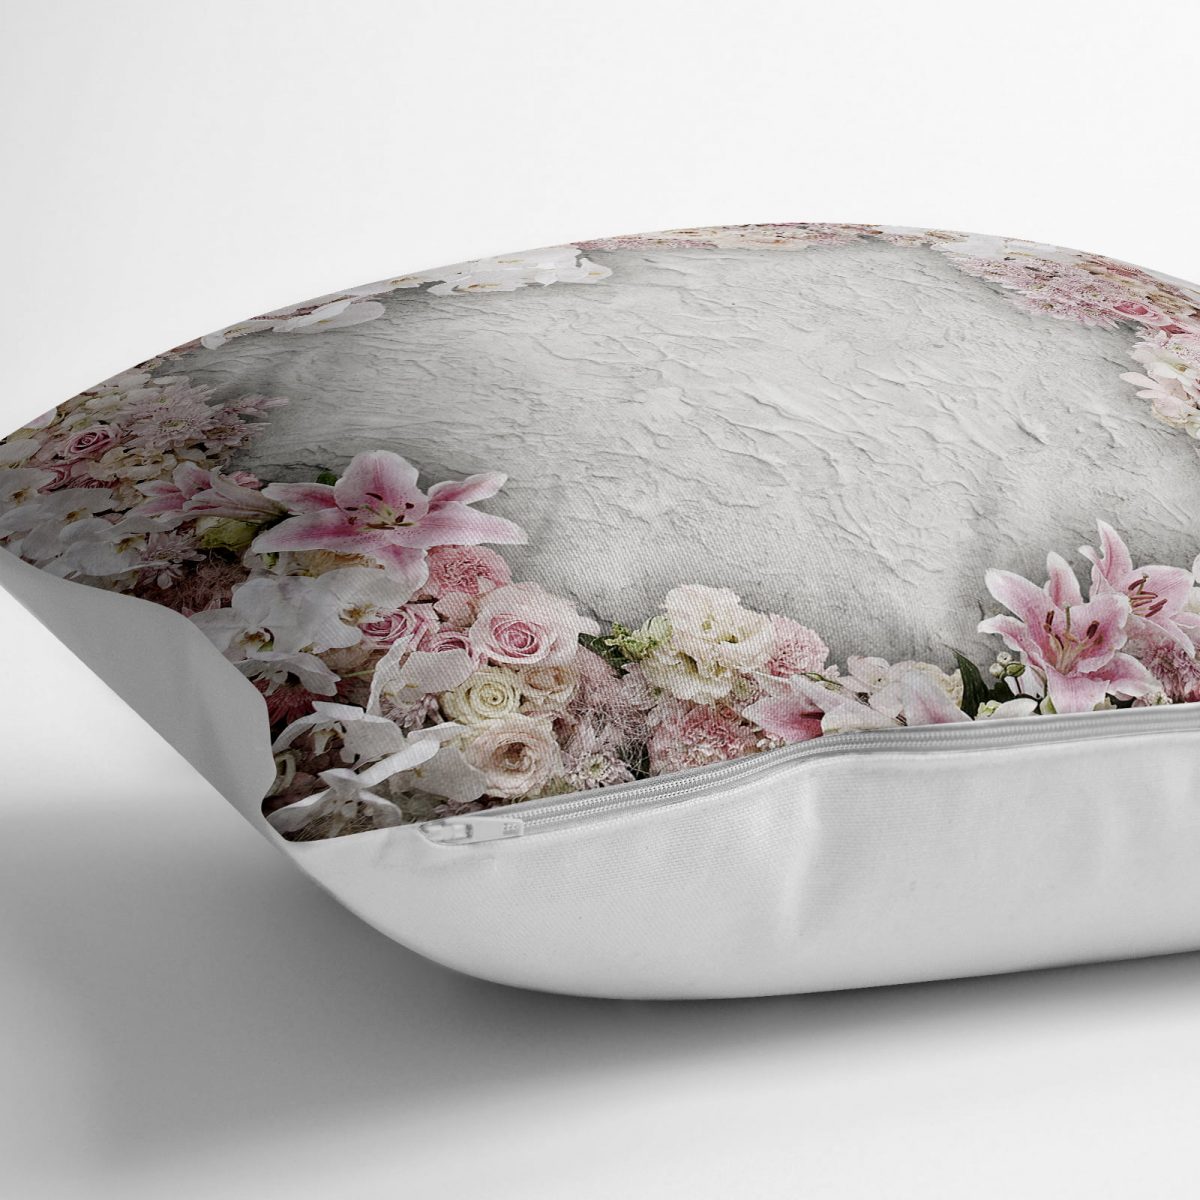 Çiçek Dünyası Dijital Baskılı Dekoratif Yer Minderi - 70 x 70 cm Realhomes